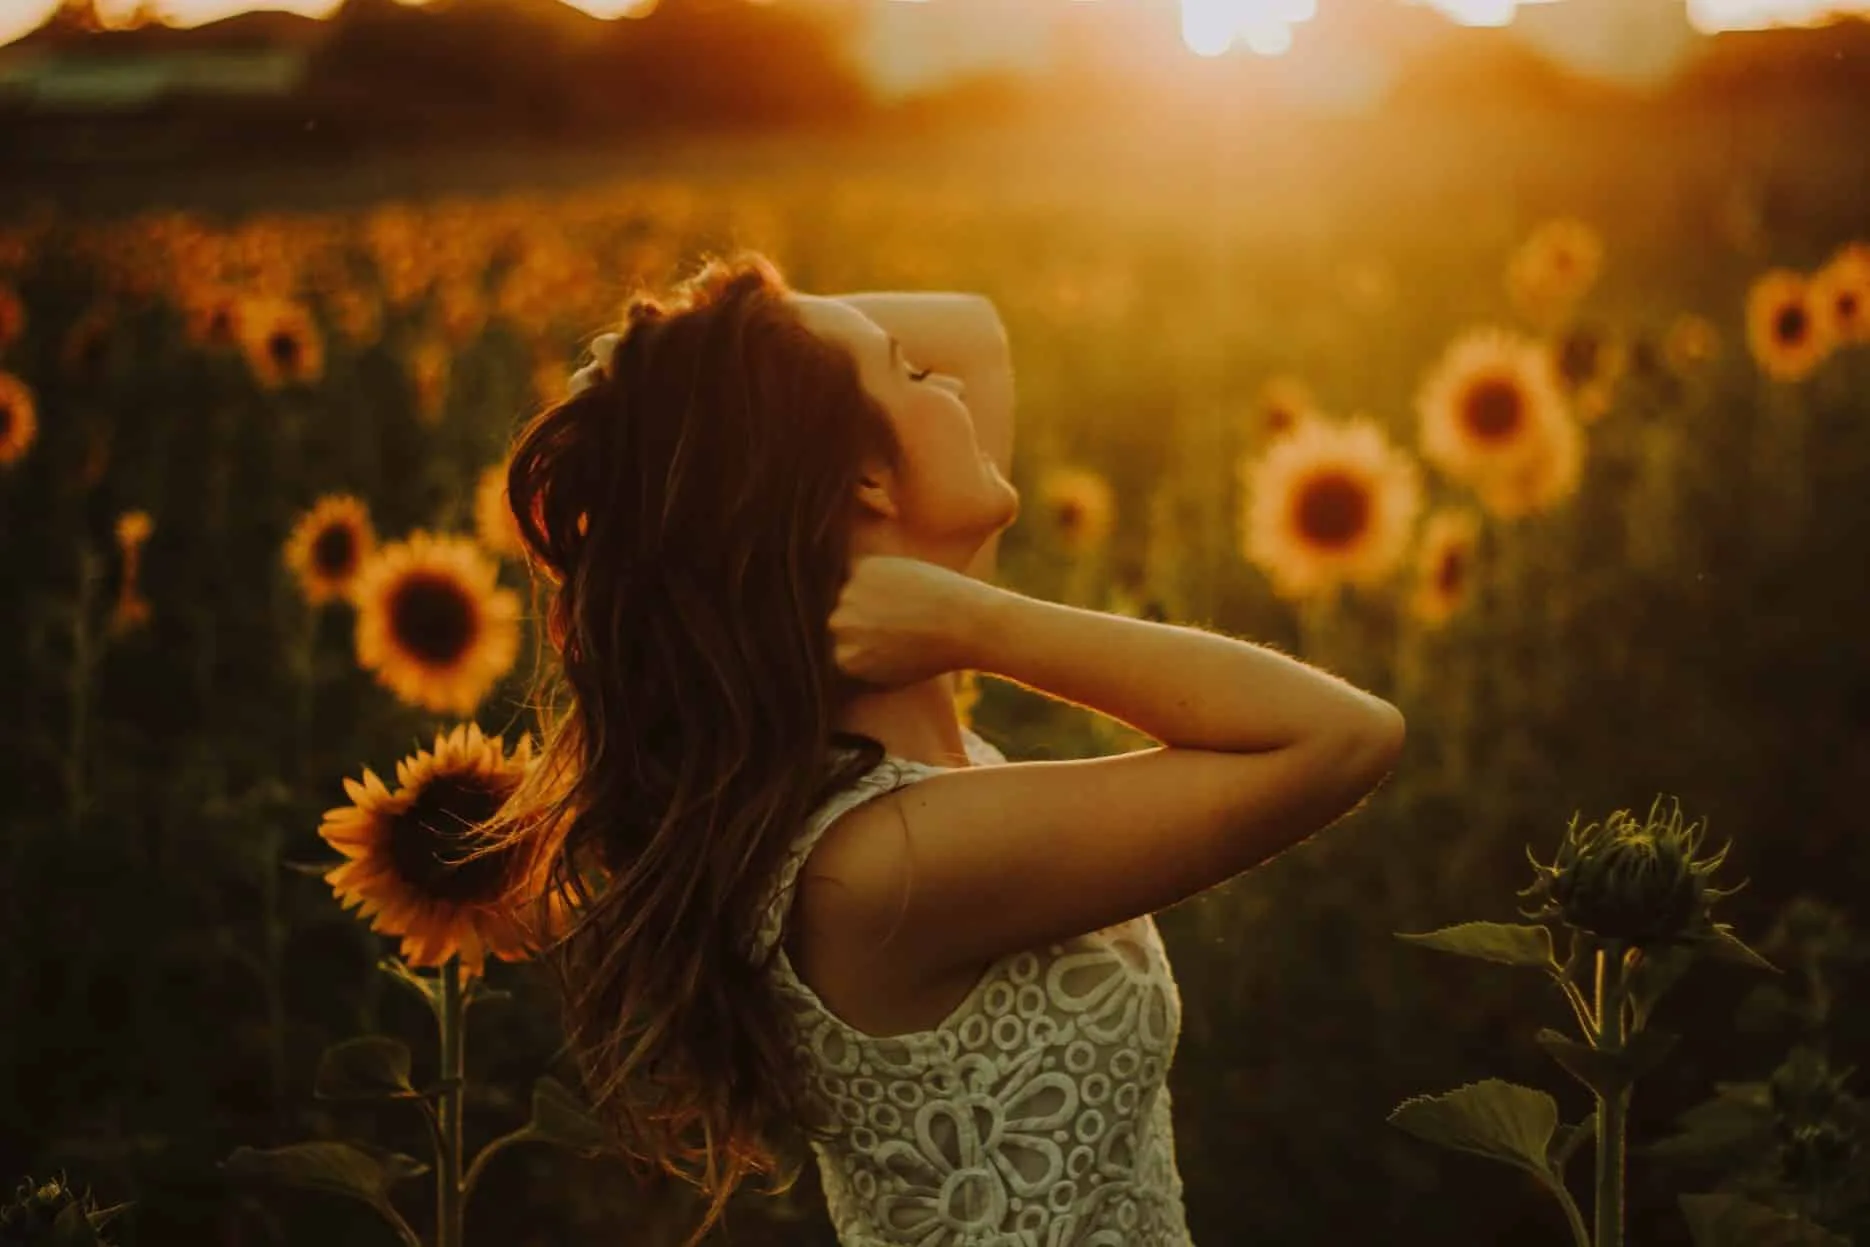 Kobieta stojąca wśród pola słoneczników, ciesząca się zachodem słońca, z ręką za głową w promieniach wieczornego światła.